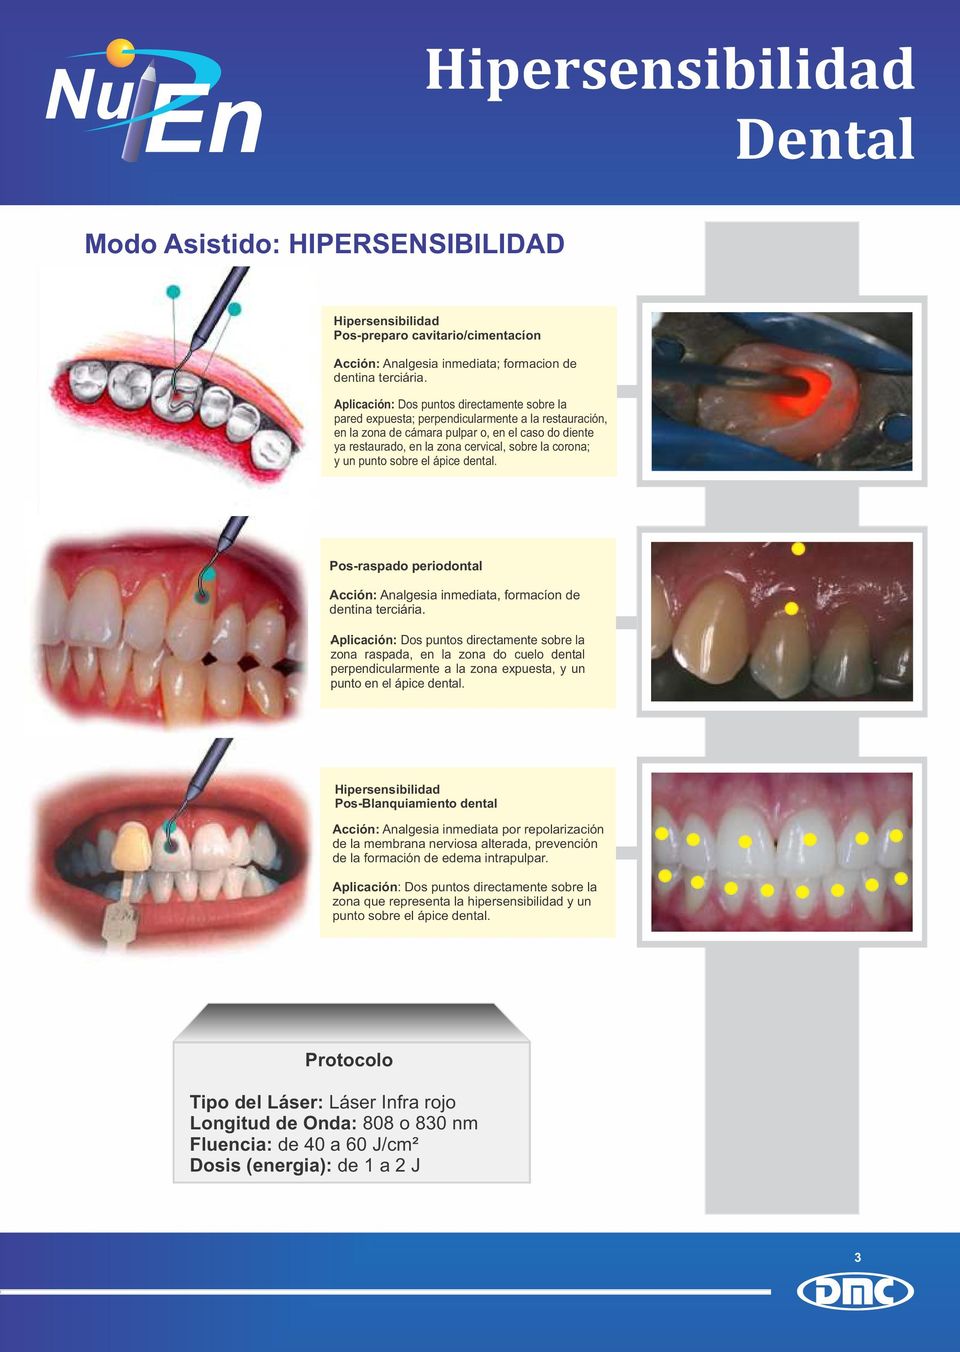 corona; y un punto sobre el ápice dental. Pos-raspado periodontal Acción: Analgesia inmediata, formacíon de dentina terciária.